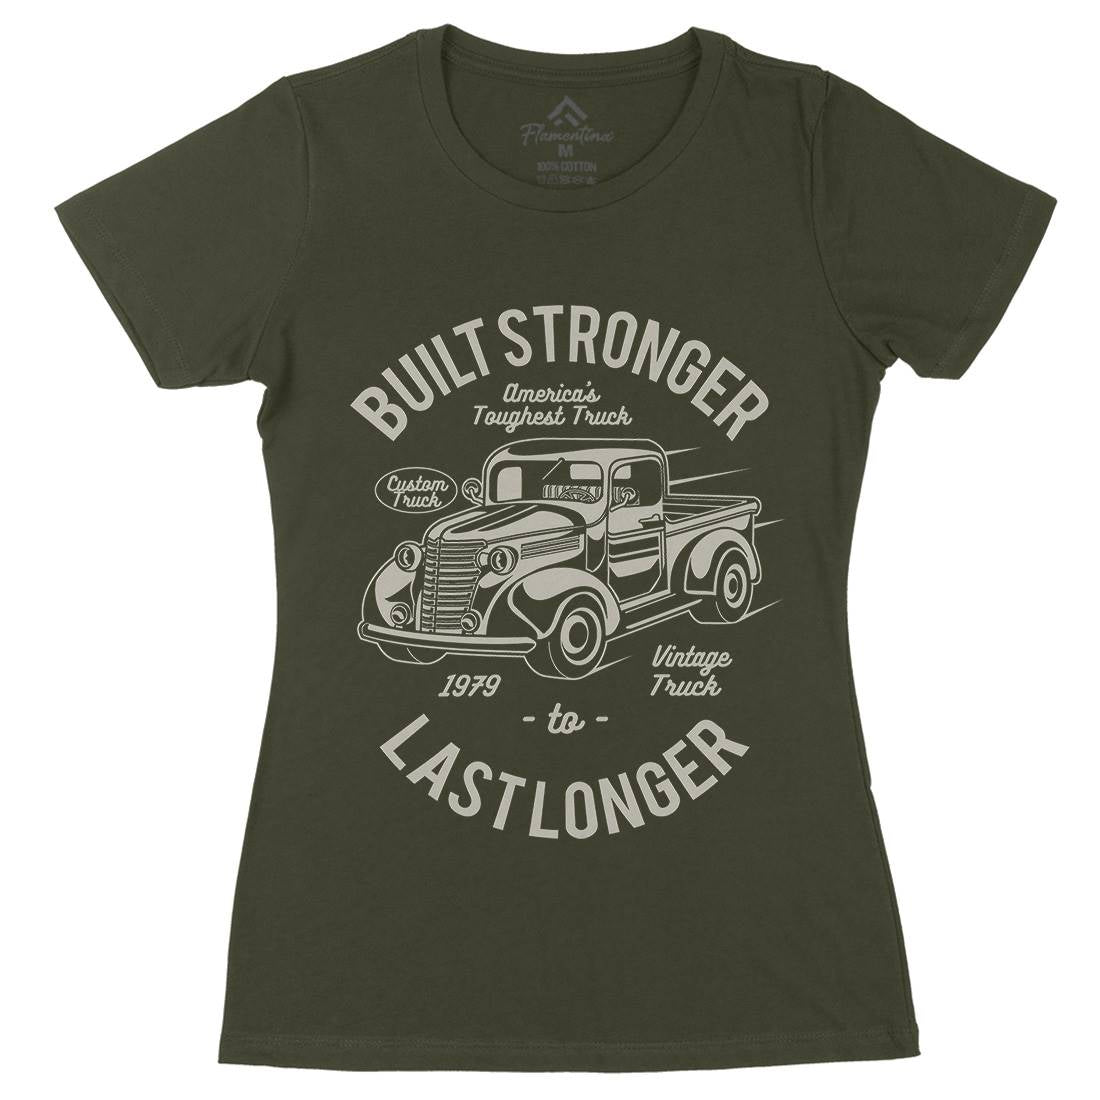 Built Stronger Womens Organic Crew Neck T-Shirt Cars A023